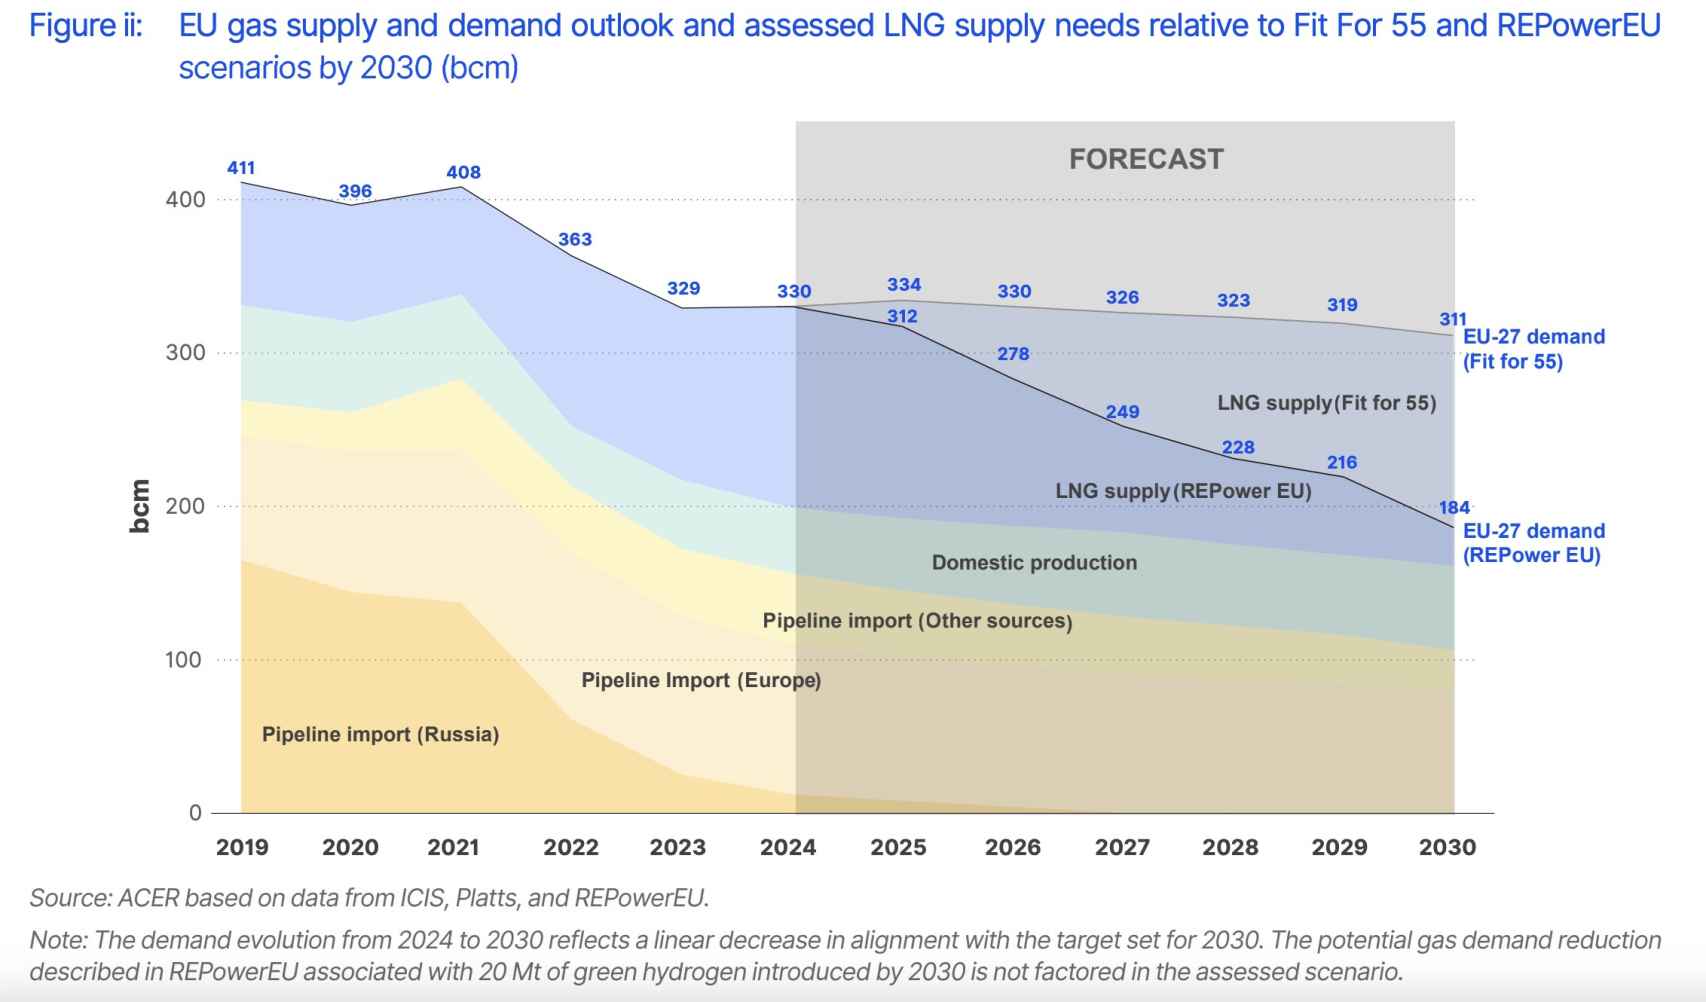 Perspectivas de oferta y demanda de gas de la UE y necesidades evaluadas de suministro de GNL en relación con los escenarios Fit For 55 y REPowerEU para 2030 (bcm)